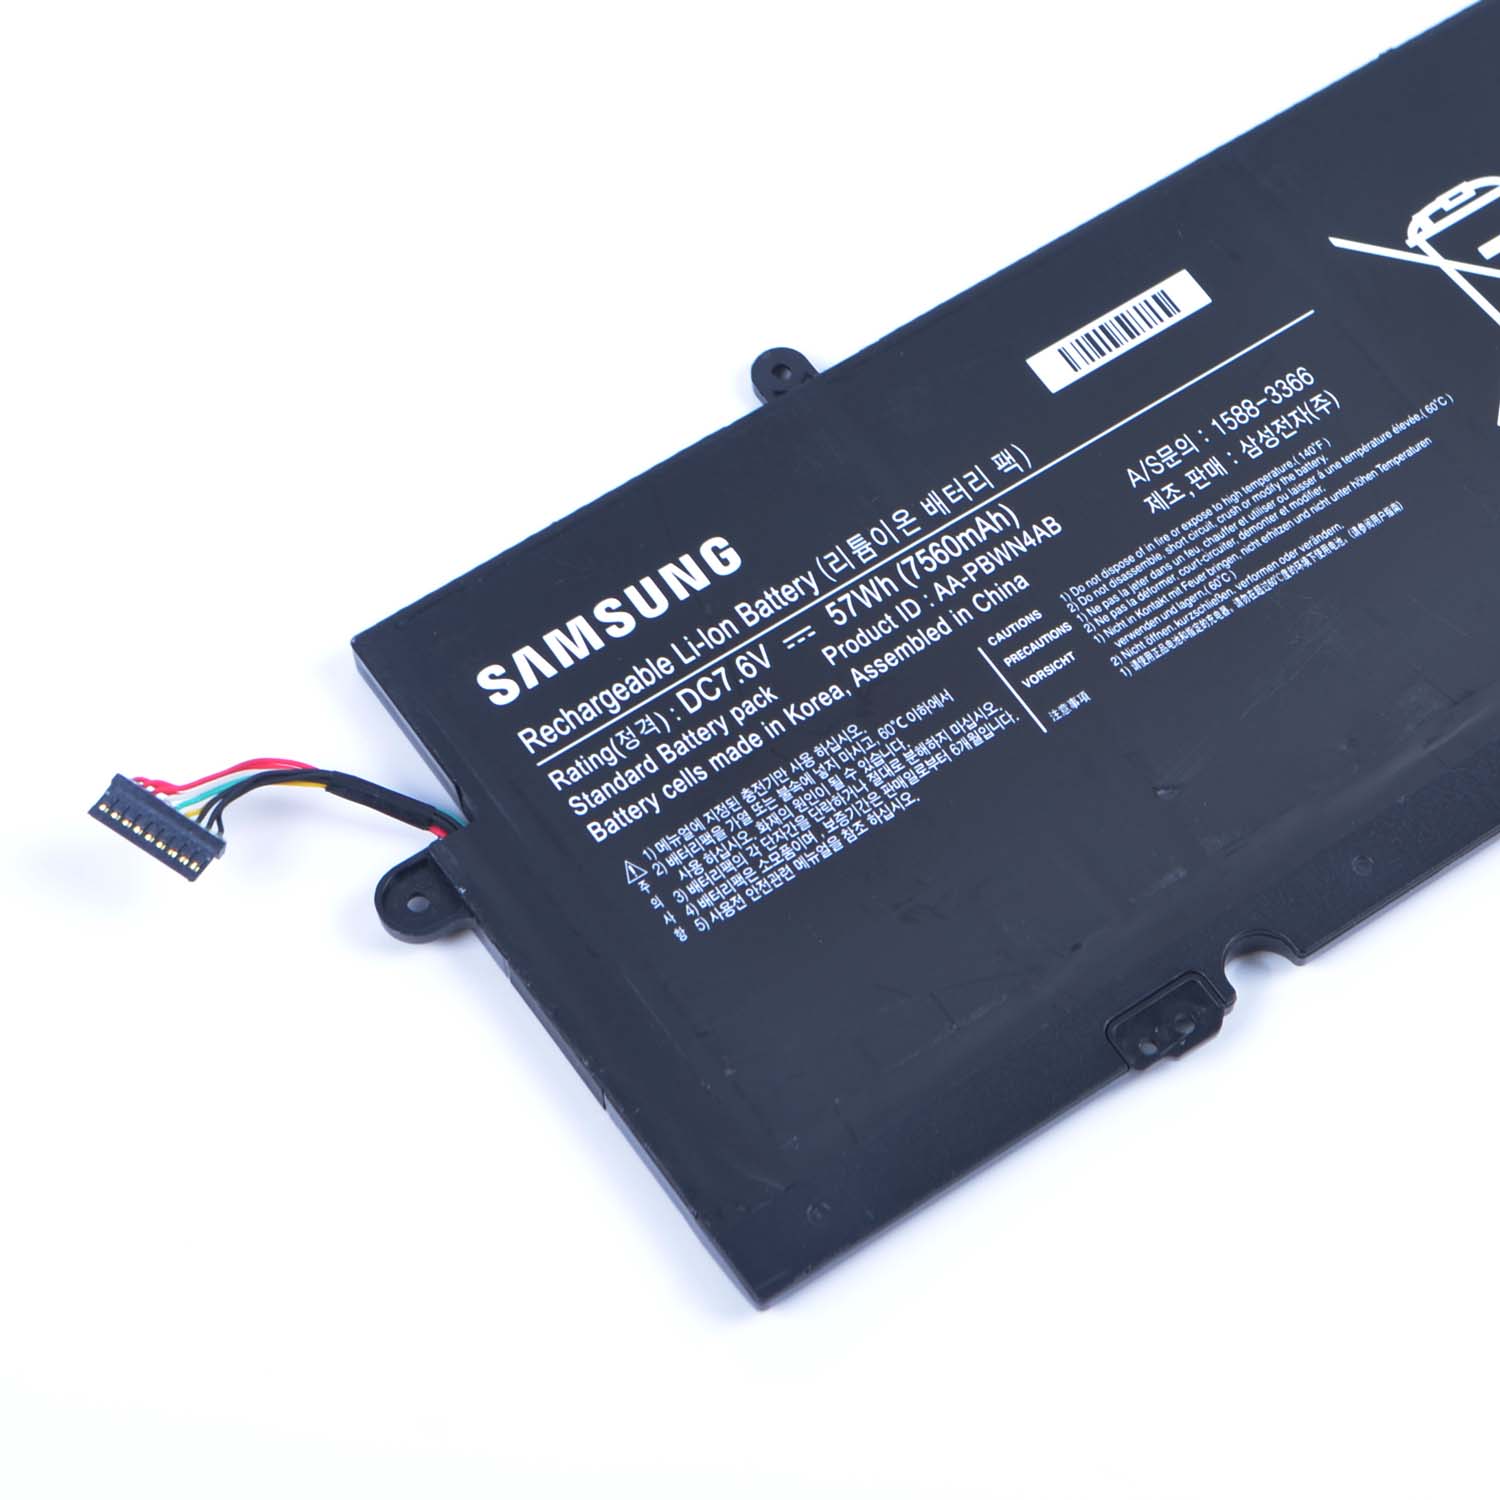 Samsung 730U3E-K01 batería